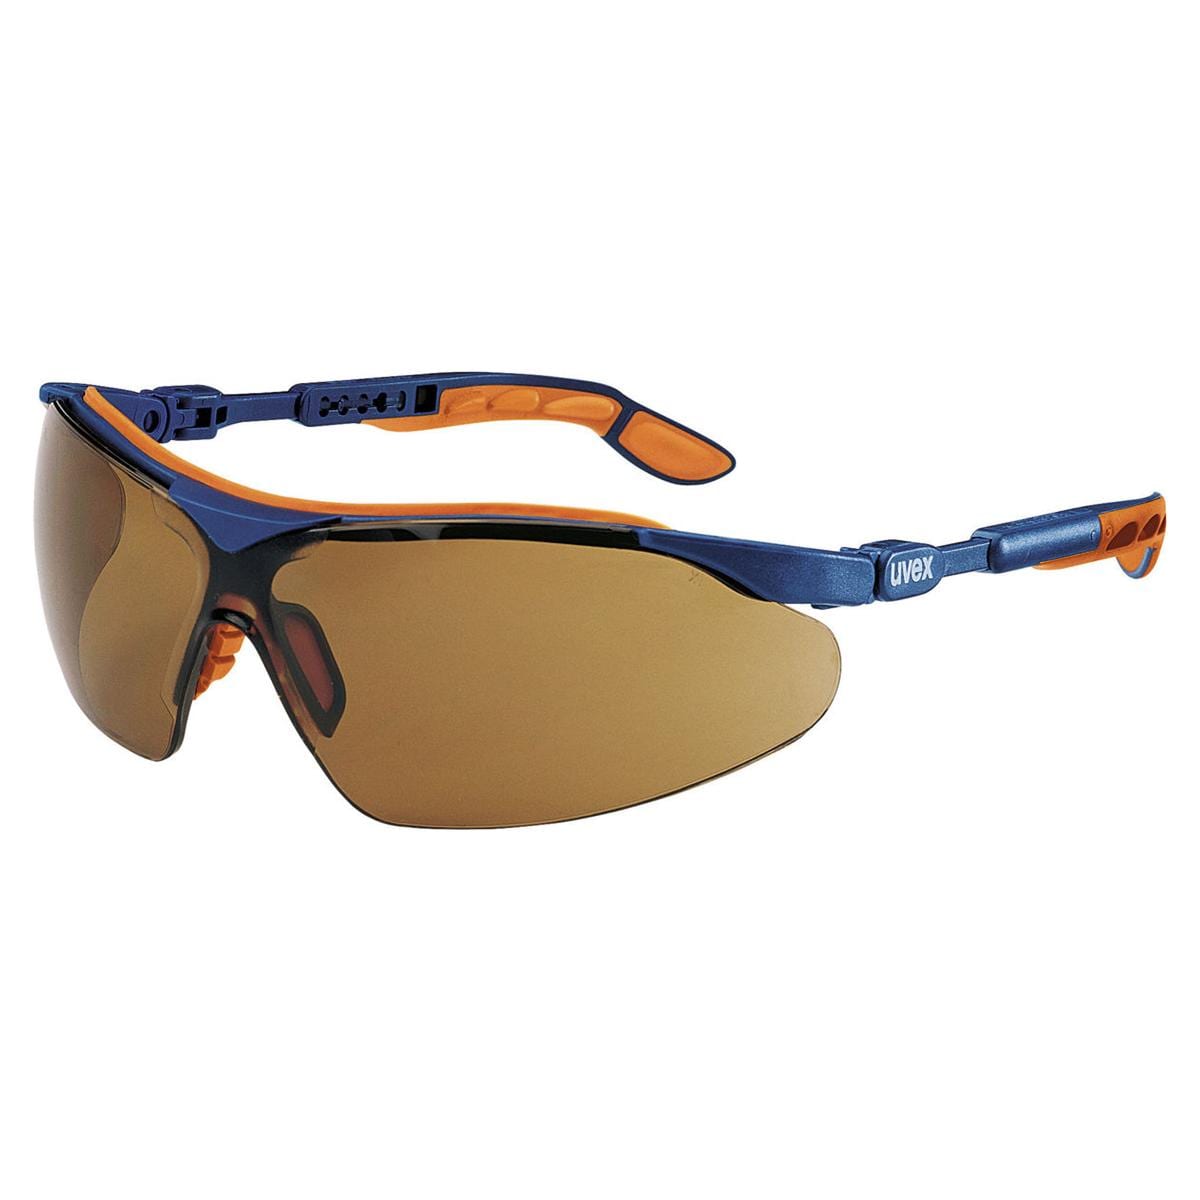 iSpec® Comfort Fit - Blau / orange, Scheibe braun